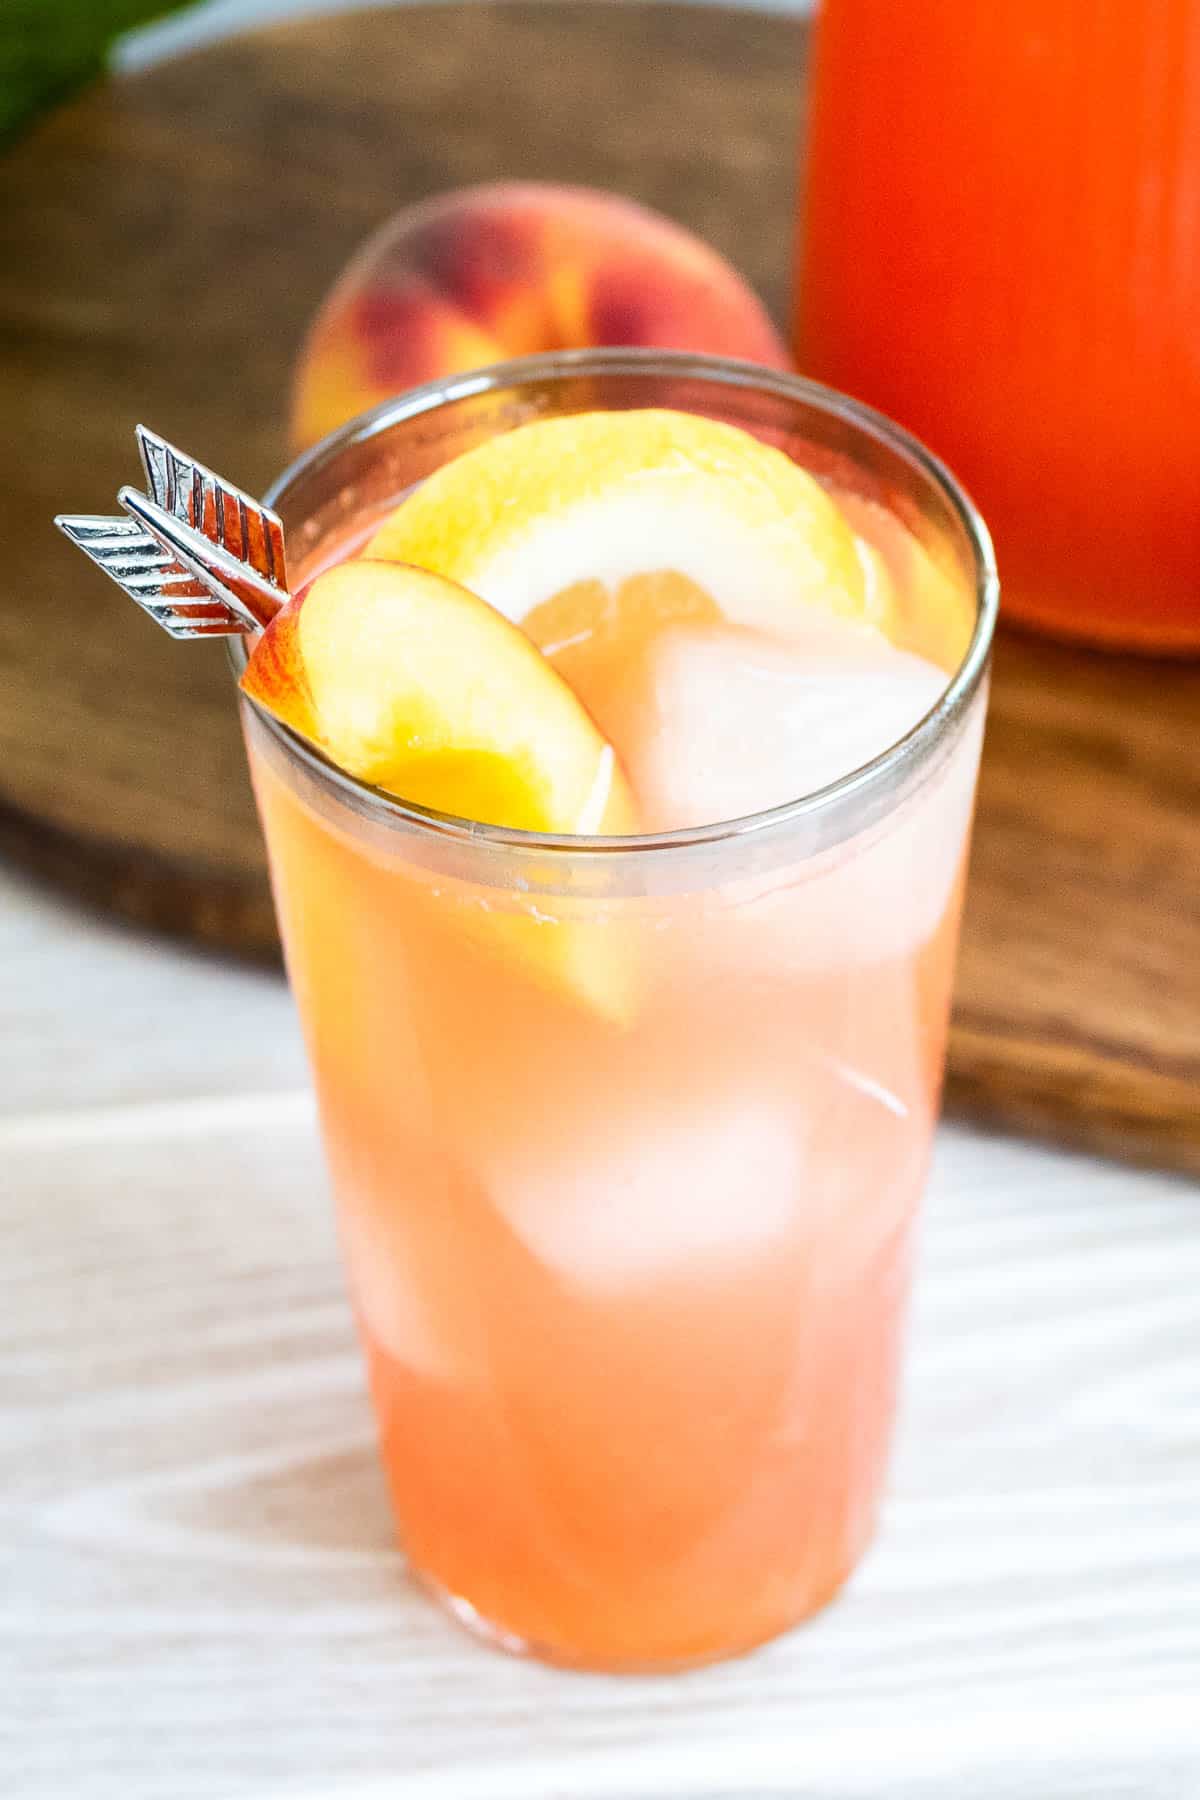 A close up photo of a glass of peach lemonade.